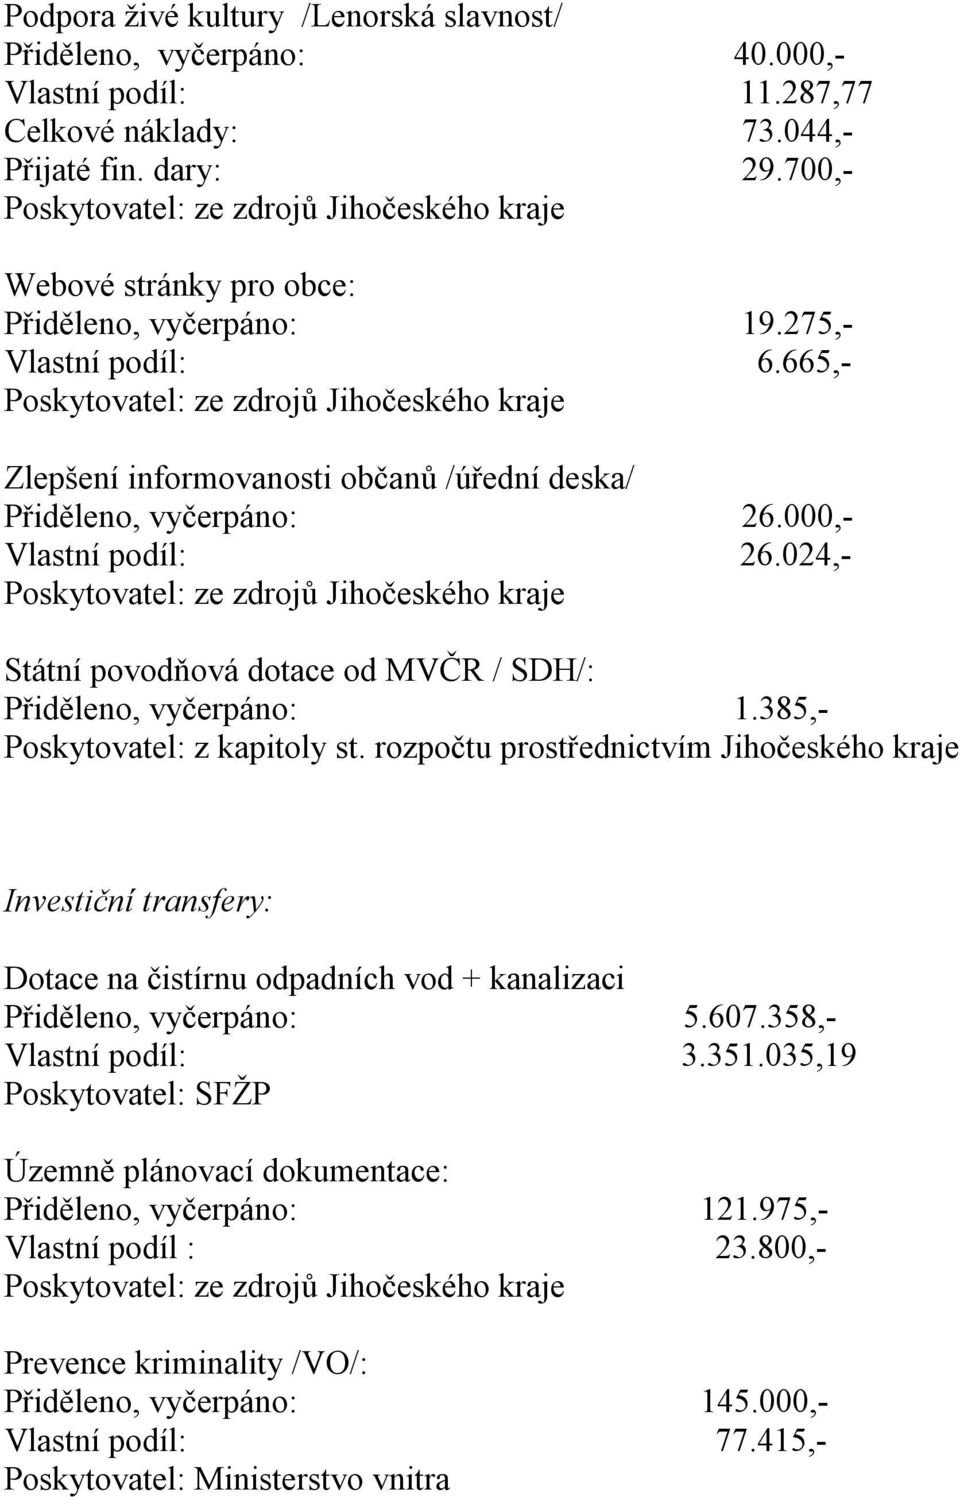 024,- Státní povodňová dotace od MVČR / SDH/: Přiděleno, vyčerpáno: 1.385,- Poskytovatel: z kapitoly st.